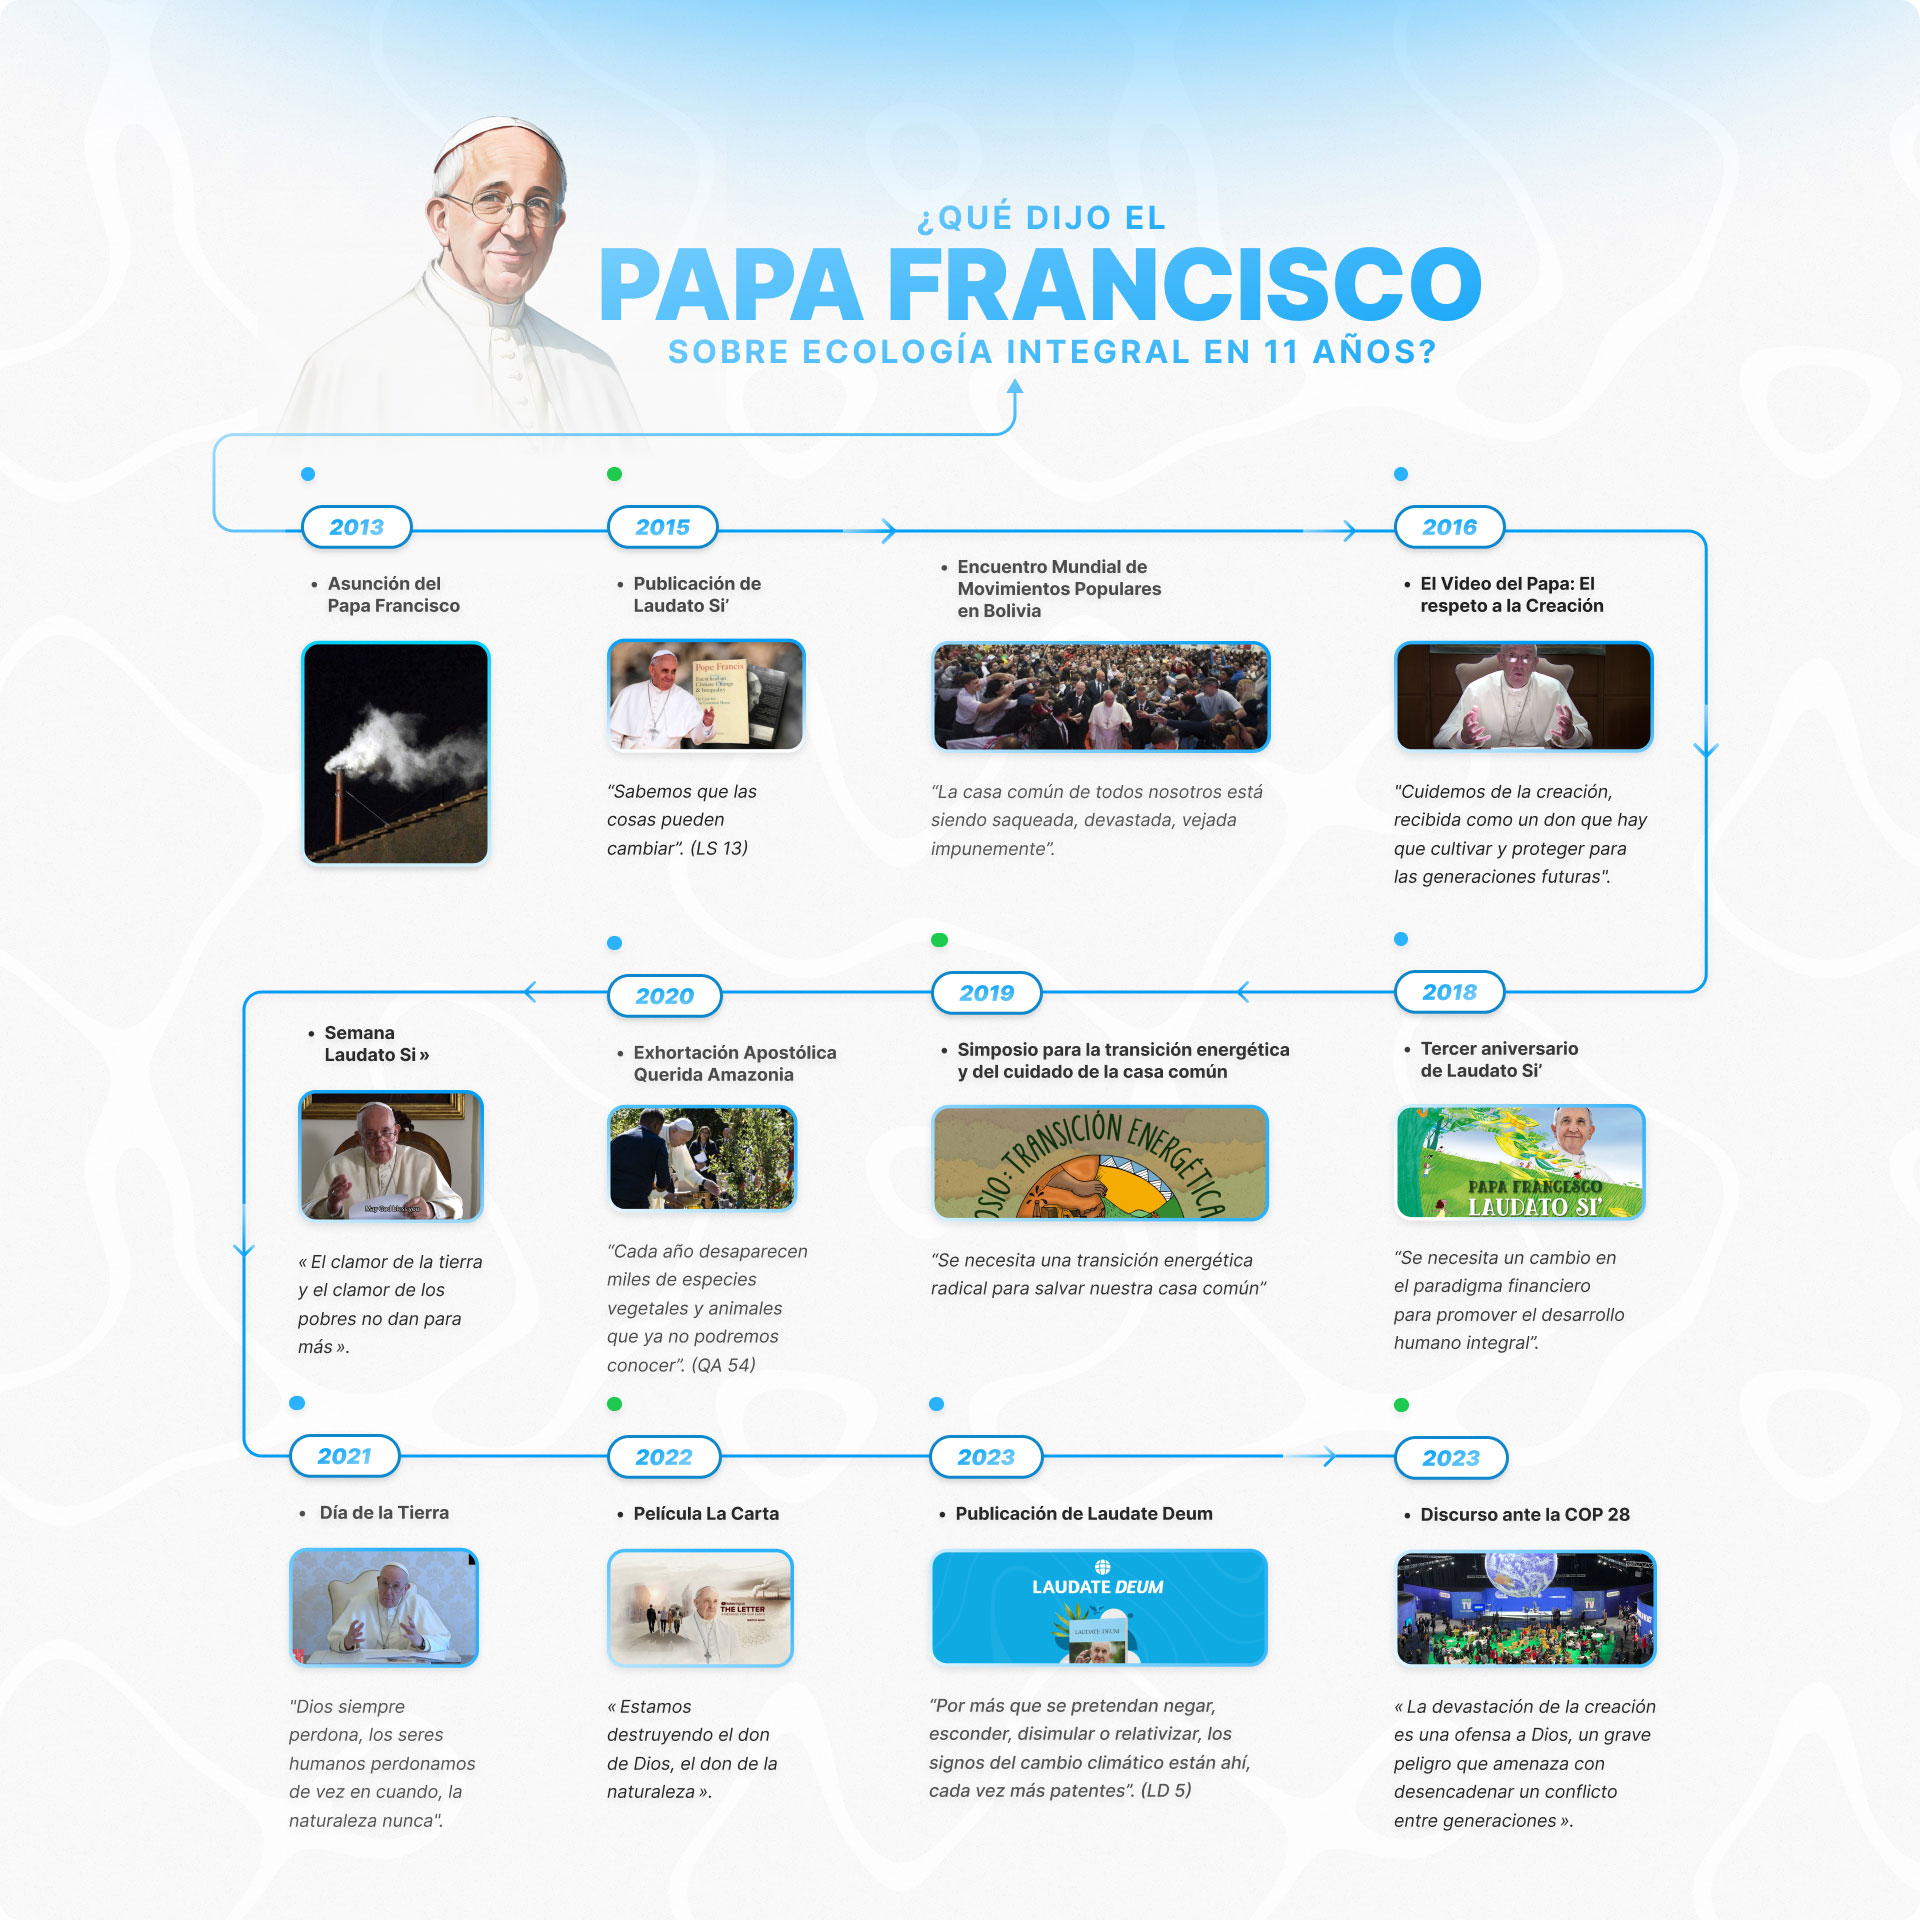 Global -¿Qué ha dicho el Papa Francisco sobre ecología integral en 11 años?